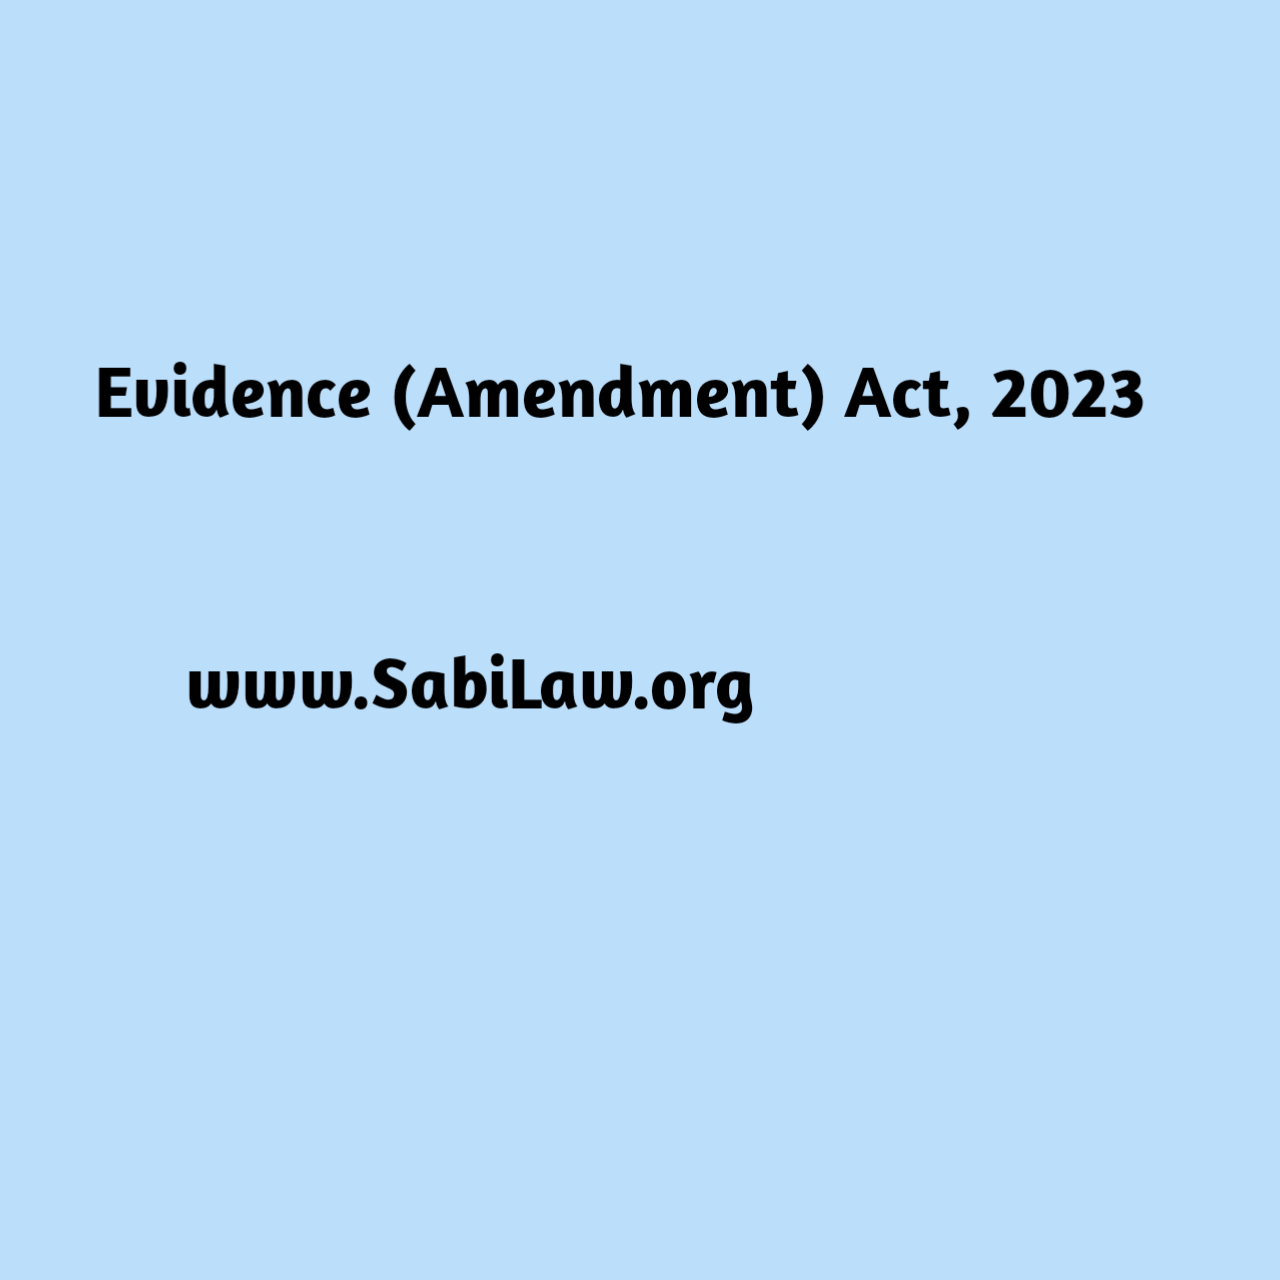 Evidence (Amendment) Act, 2023